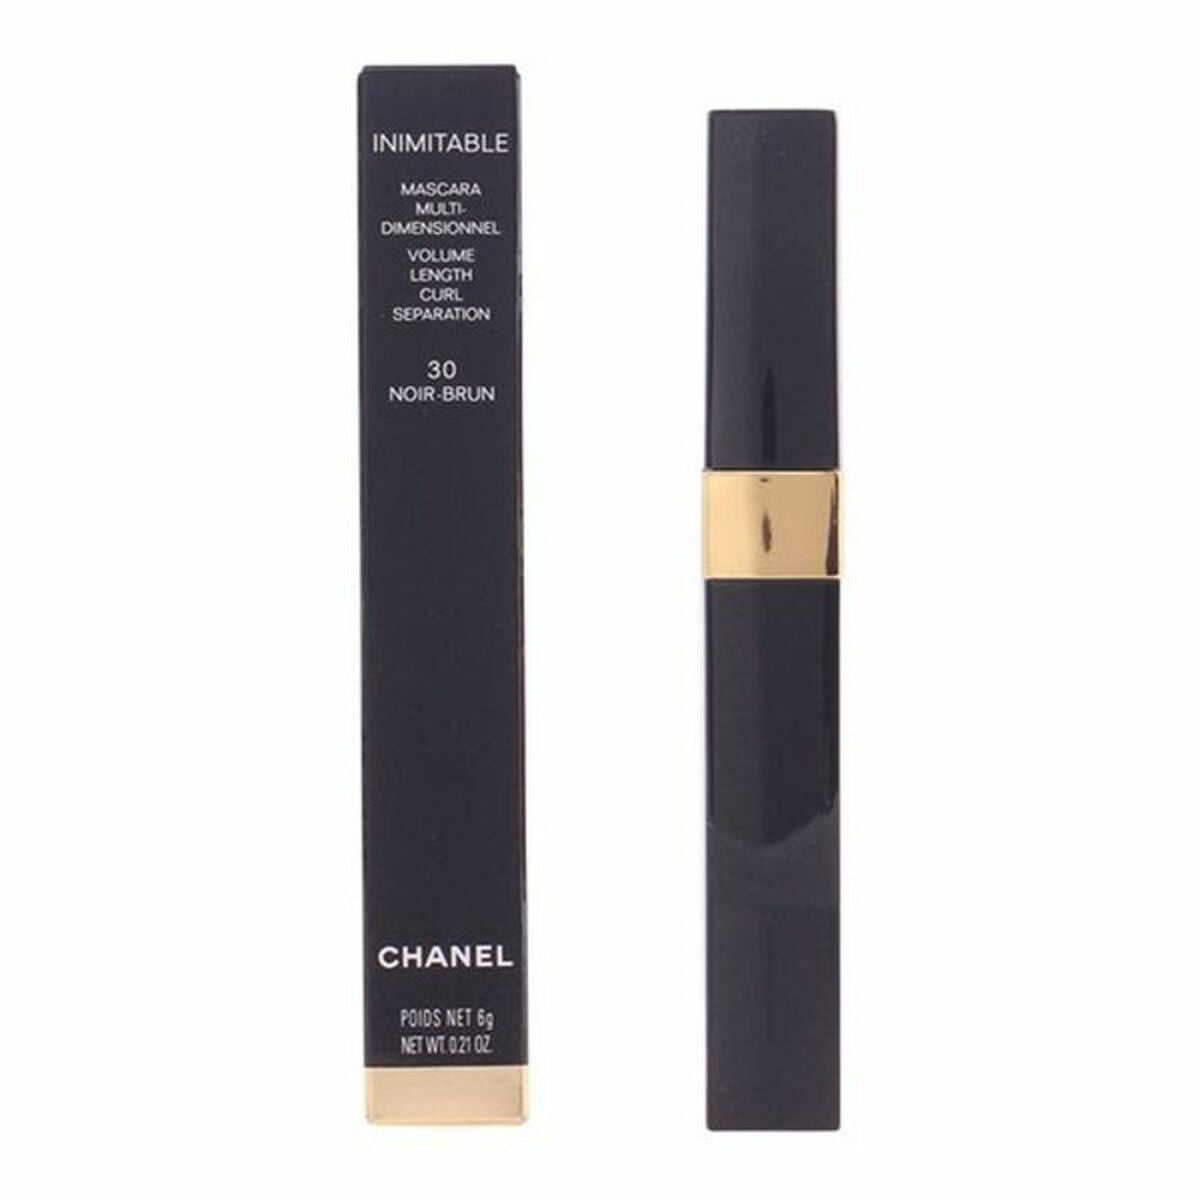 Mascara Inimitable Chanel 6 g-2